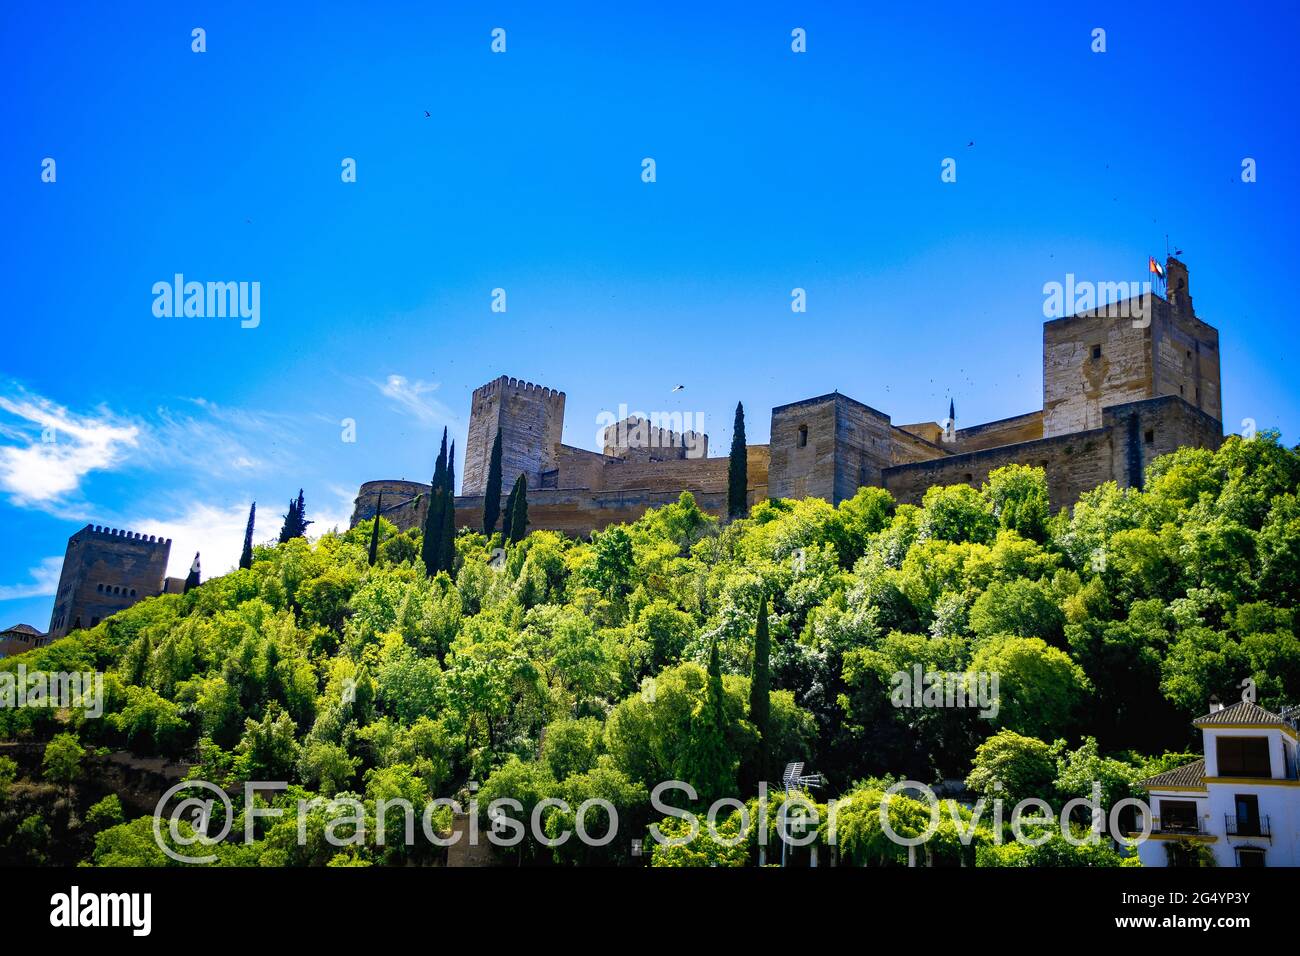 La Alhambra de Granada situada en la parte más occidental del cerro de Sabika, de planta trapezförmige Algo unregelmäßig, constituía la zona militar, Stockfoto